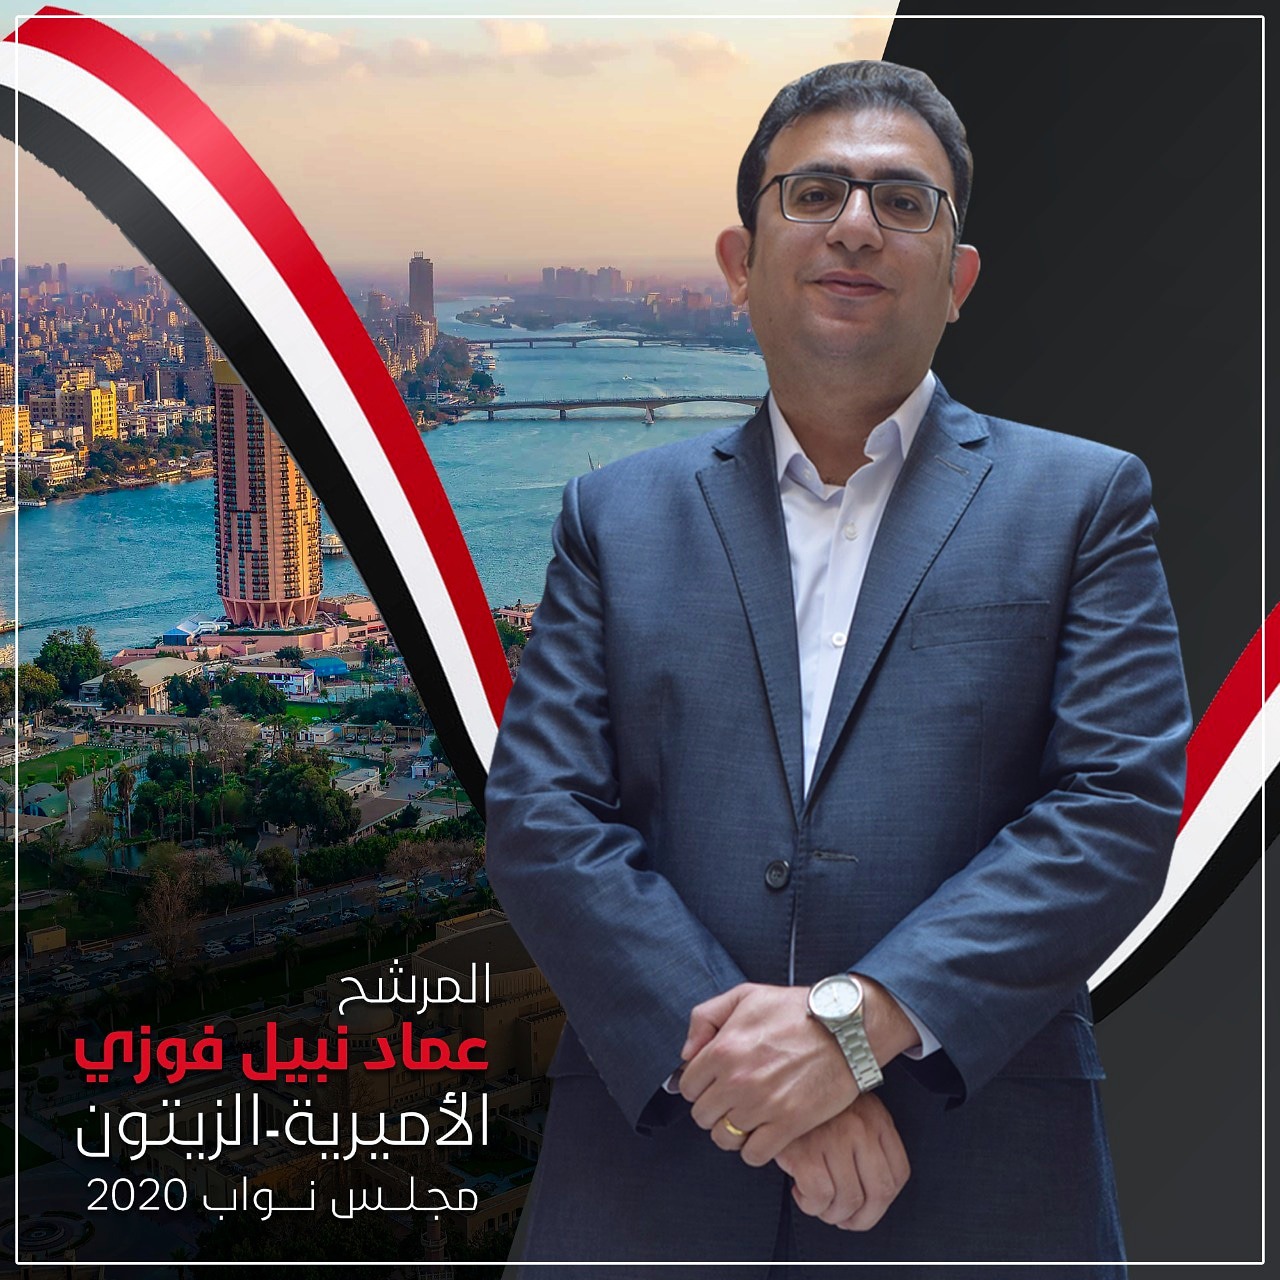 عماد نبيل فوزي، المرشح المحتمل لانتخابات مجلس النواب عن دائرة الزيتون والأميرية بالقاهرة